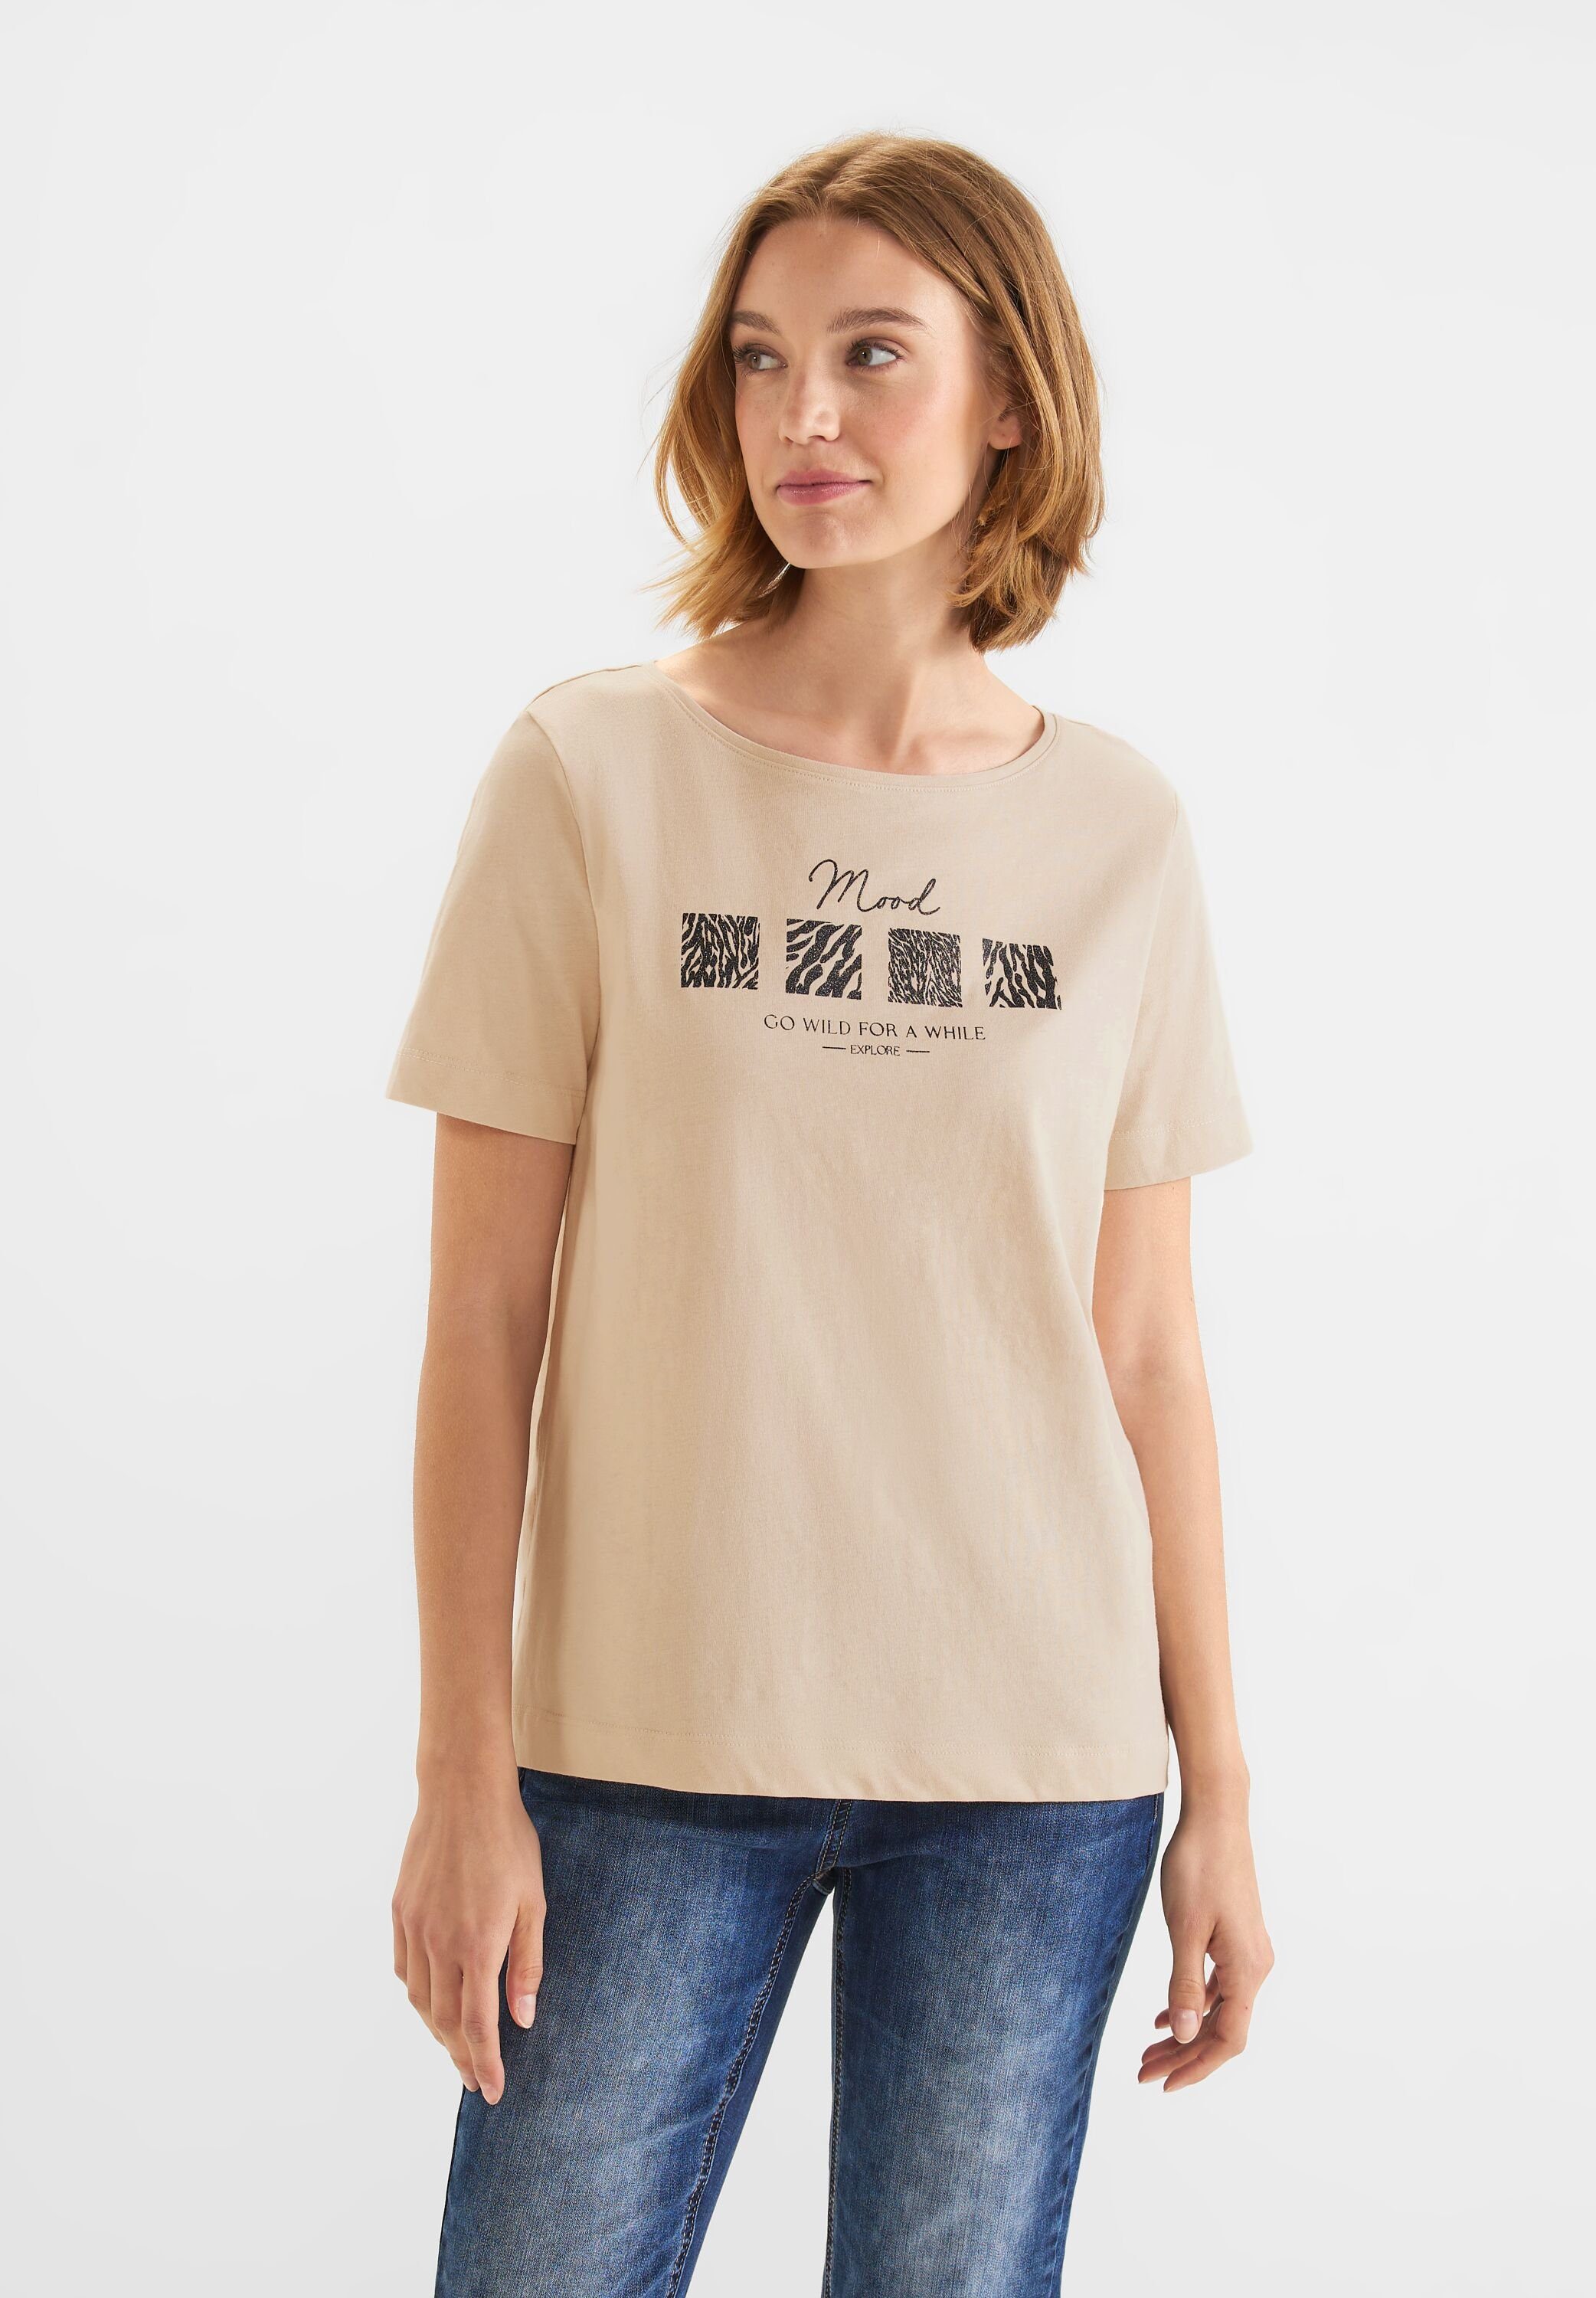 light ONE Baumwolle aus T-Shirt sand reiner STREET smooth